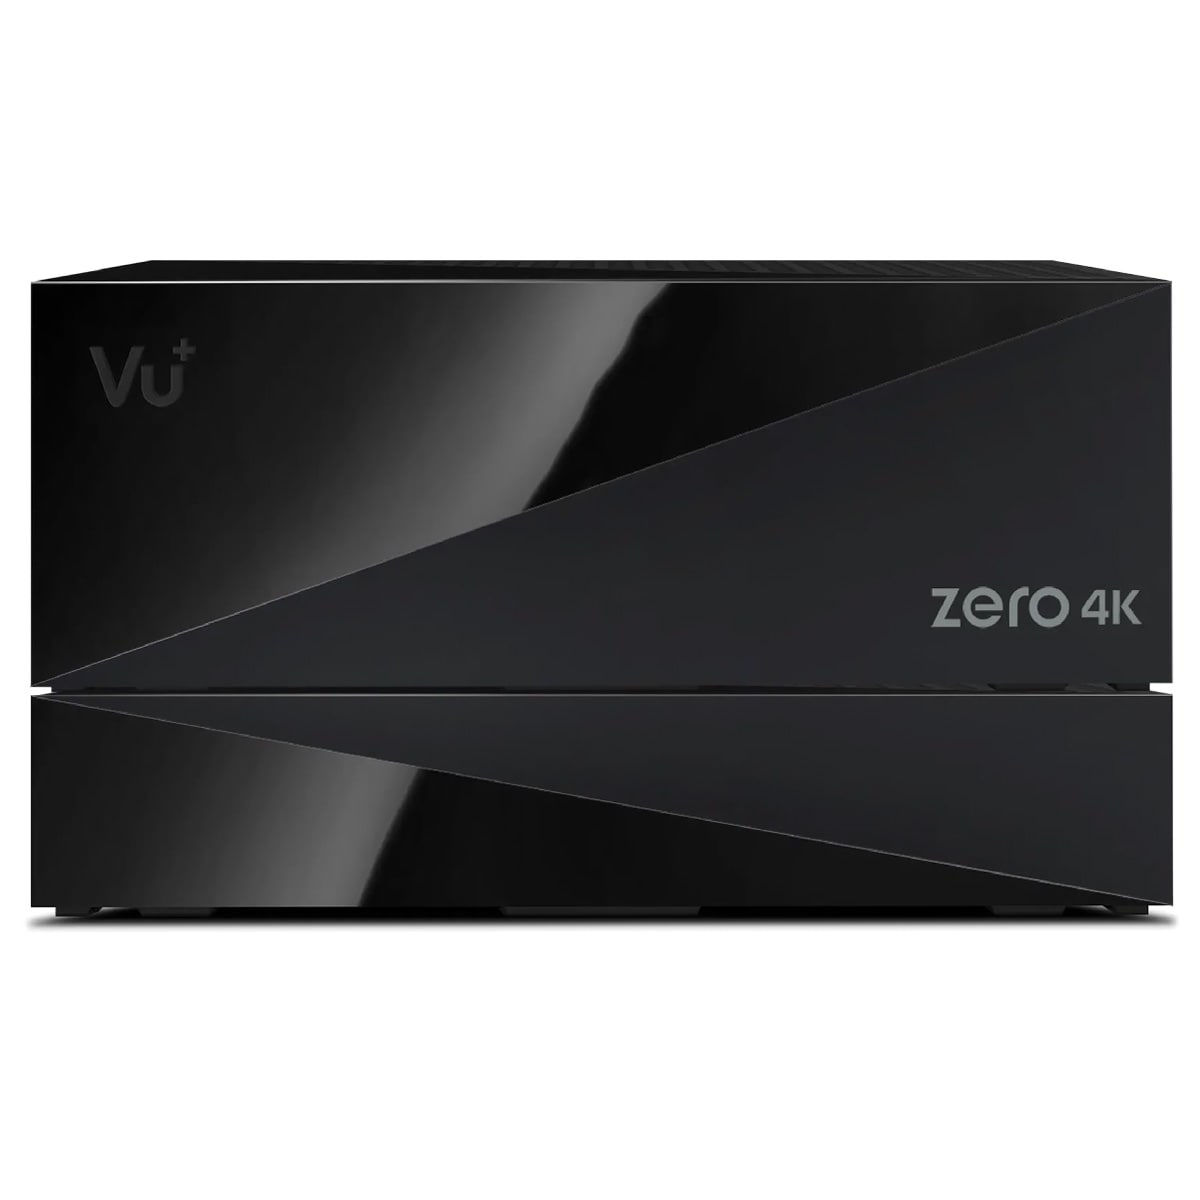 Zero MS 4K Sat 500GB (Schwarz) PVR-Kit DVB-S2X VU+ Receiver 4K inkl.